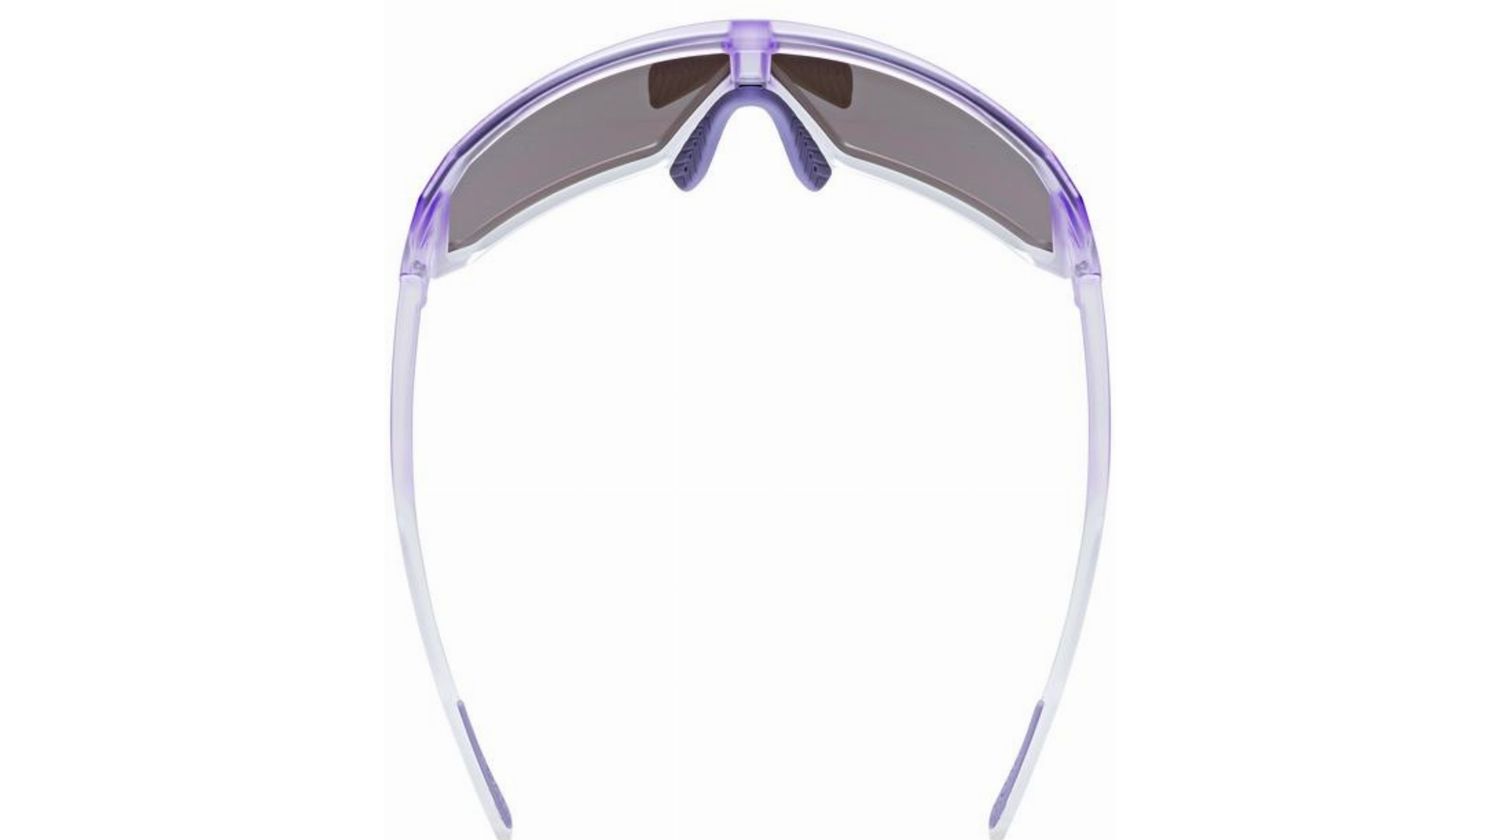 Uvex Sportstyle 237 MTB Brille purple/mirror purple